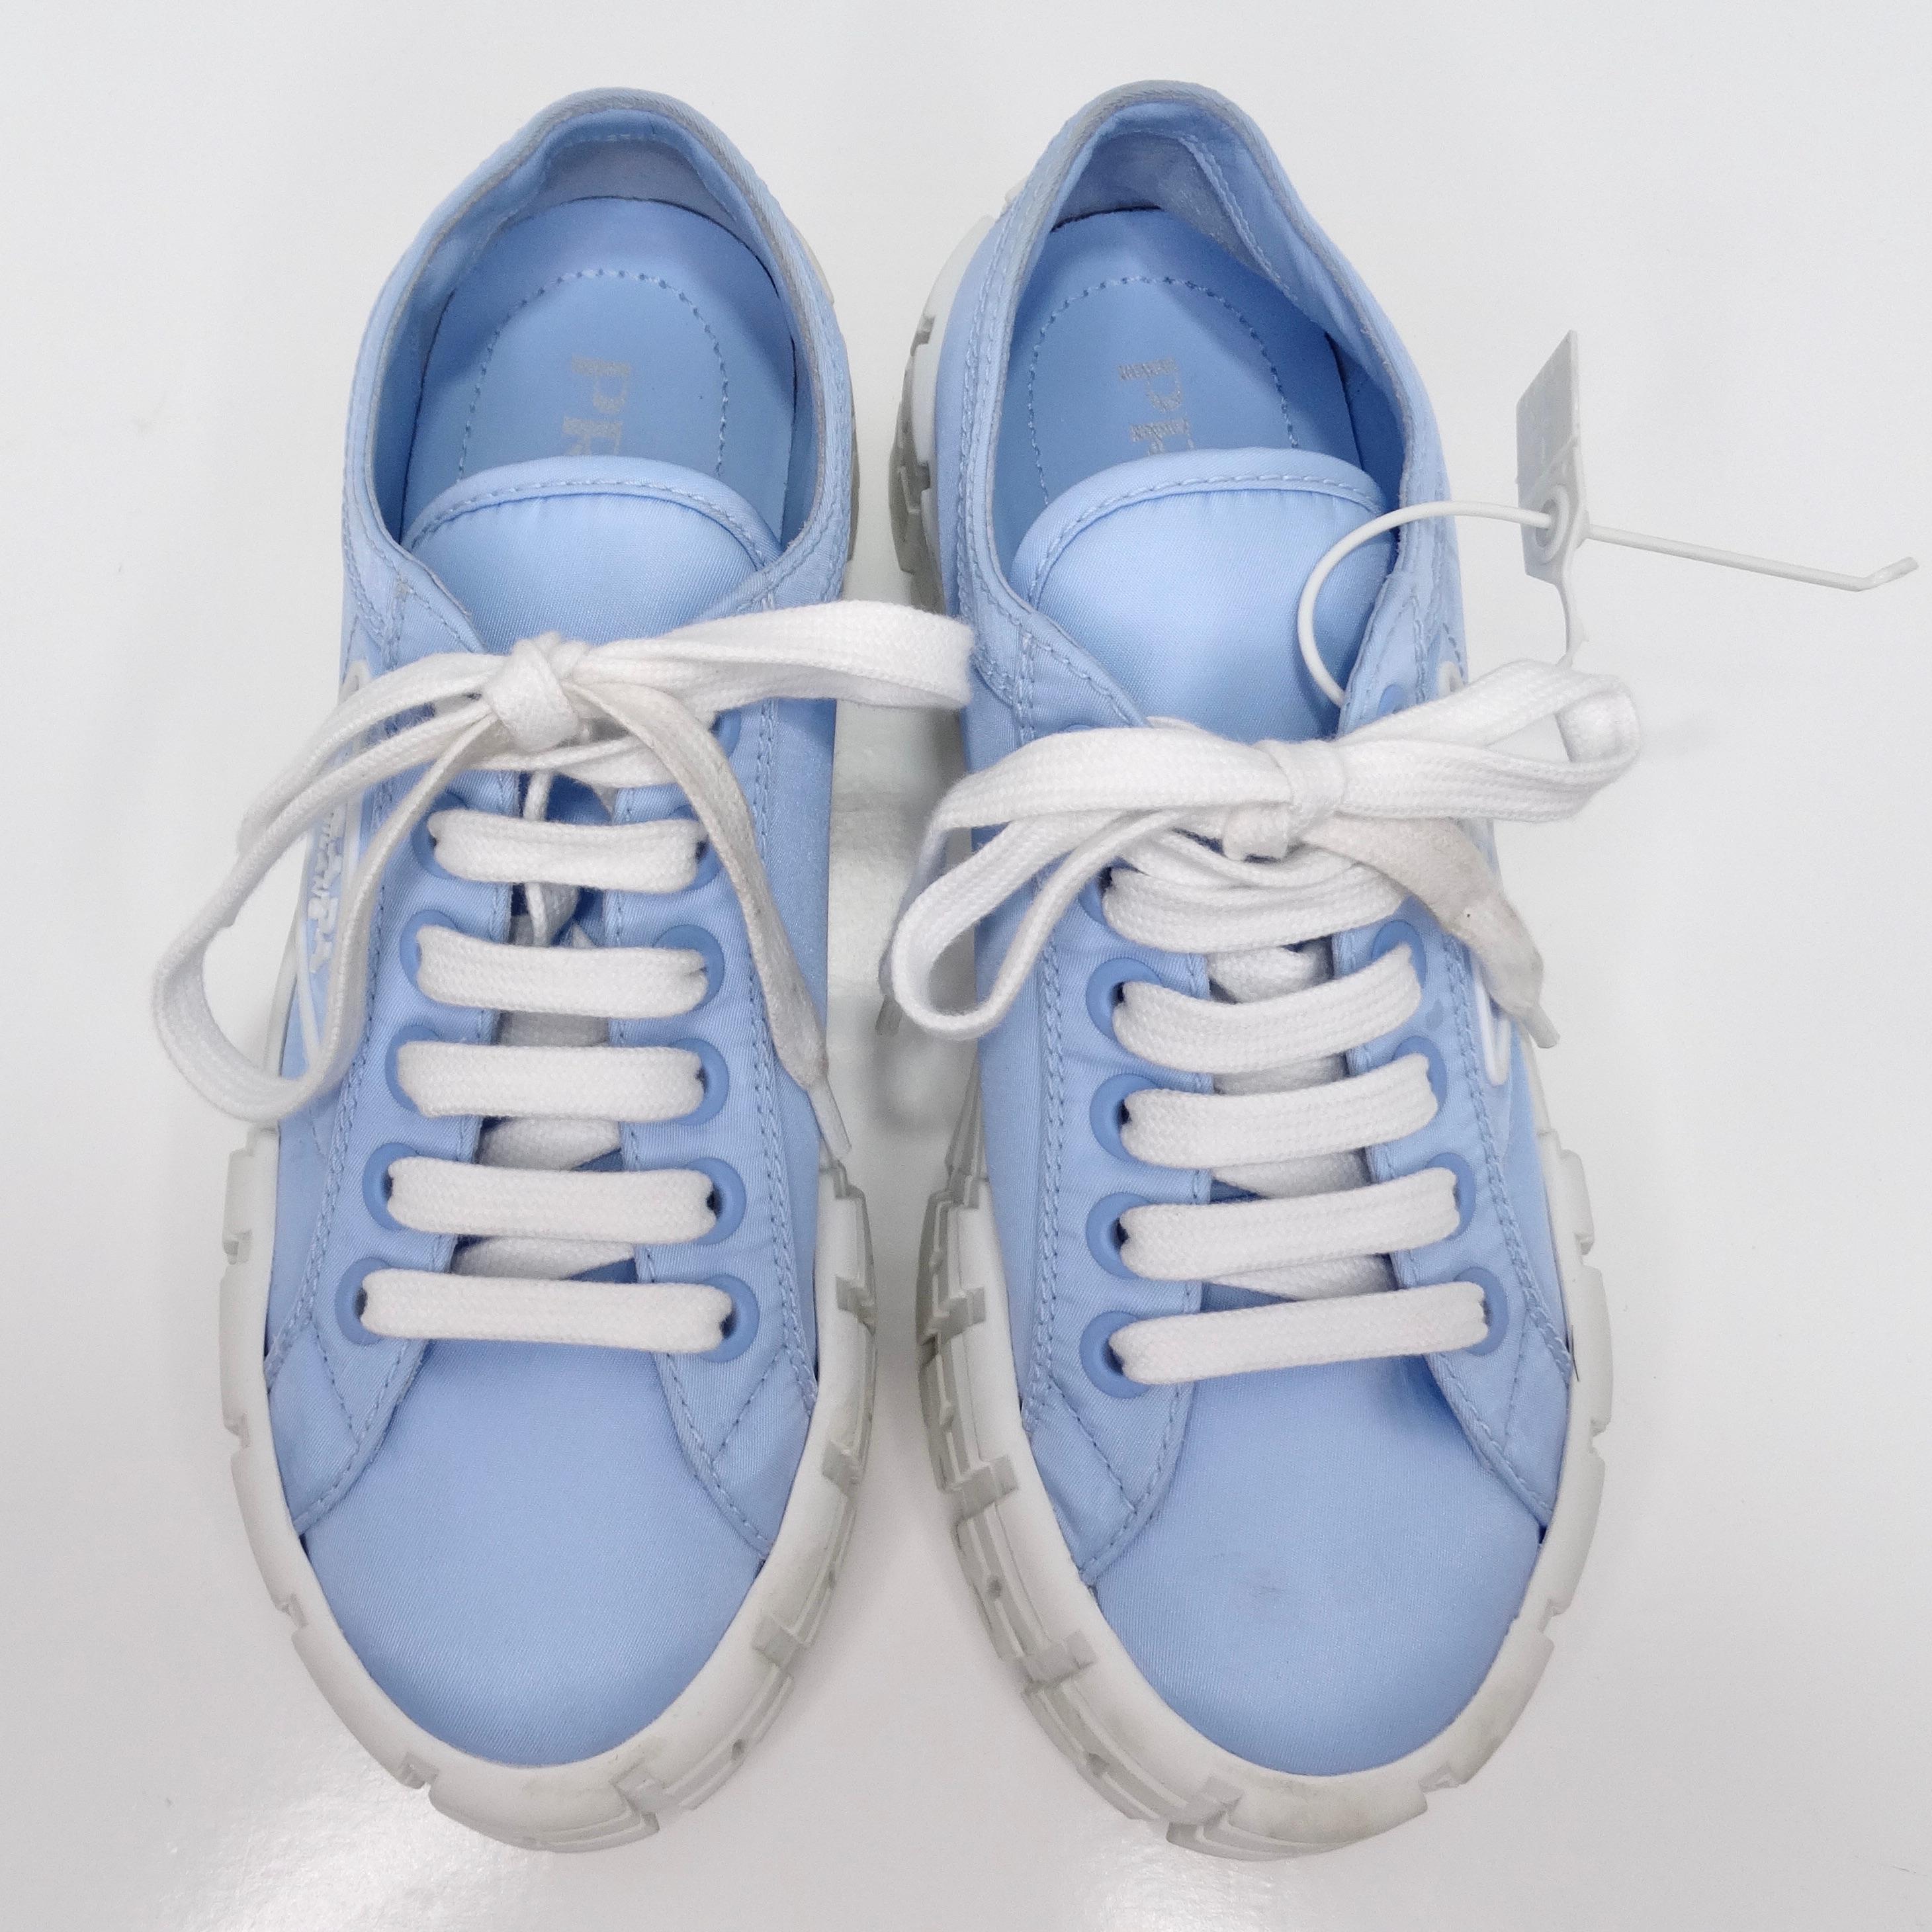 Les chaussures de sport en gabardine de nylon à double volant Prada, en bleu clair, sont un ajout élégant et marquant à toute collection de chaussures. Ces baskets à plateforme sont dotées d'une semelle texturée épaisse qui non seulement donne de la